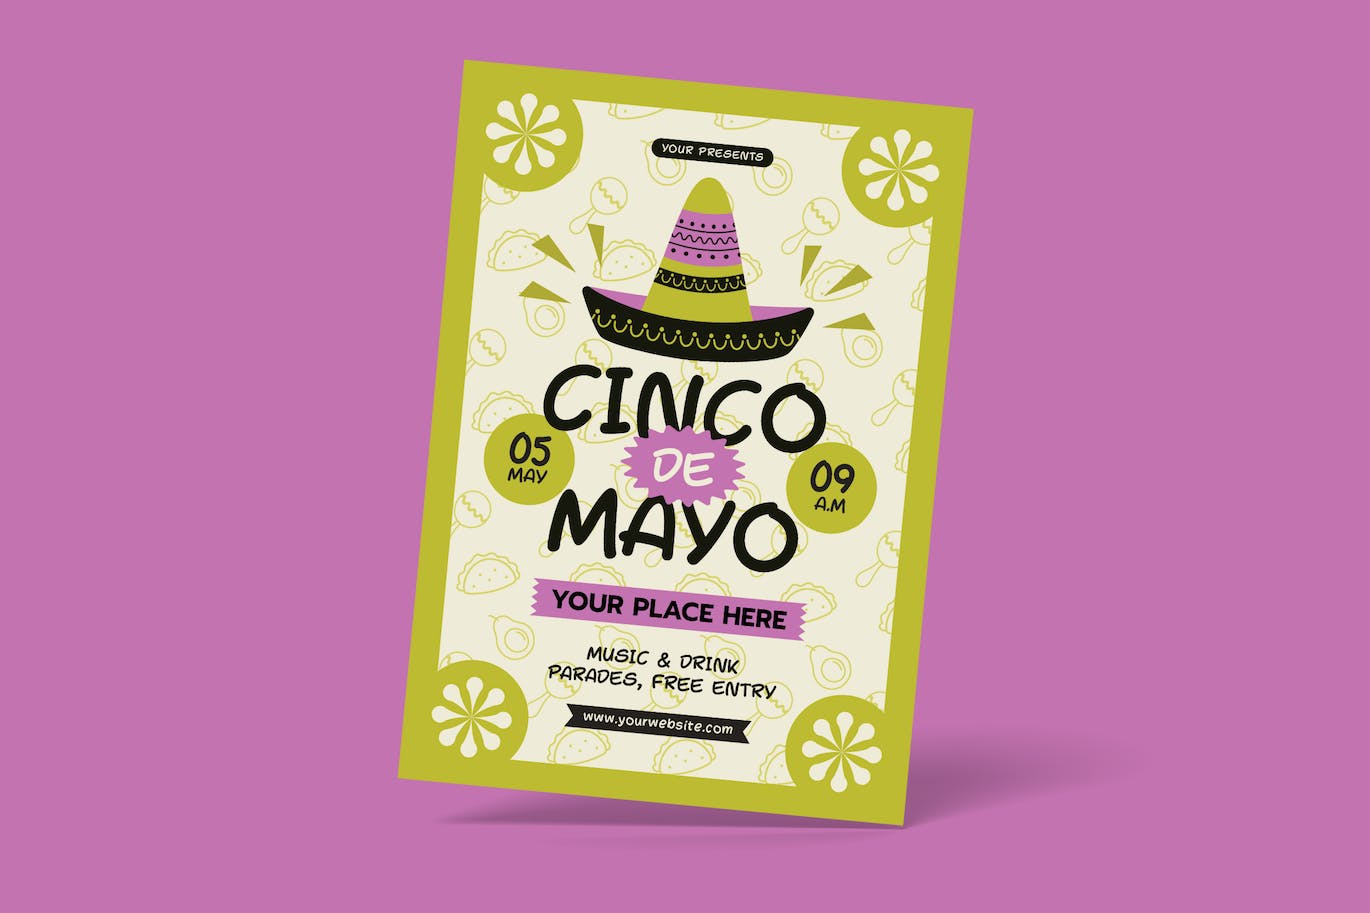 五月五日墨西哥节日宣传单素材 Cinco De Mayo Flyer 设计素材 第1张